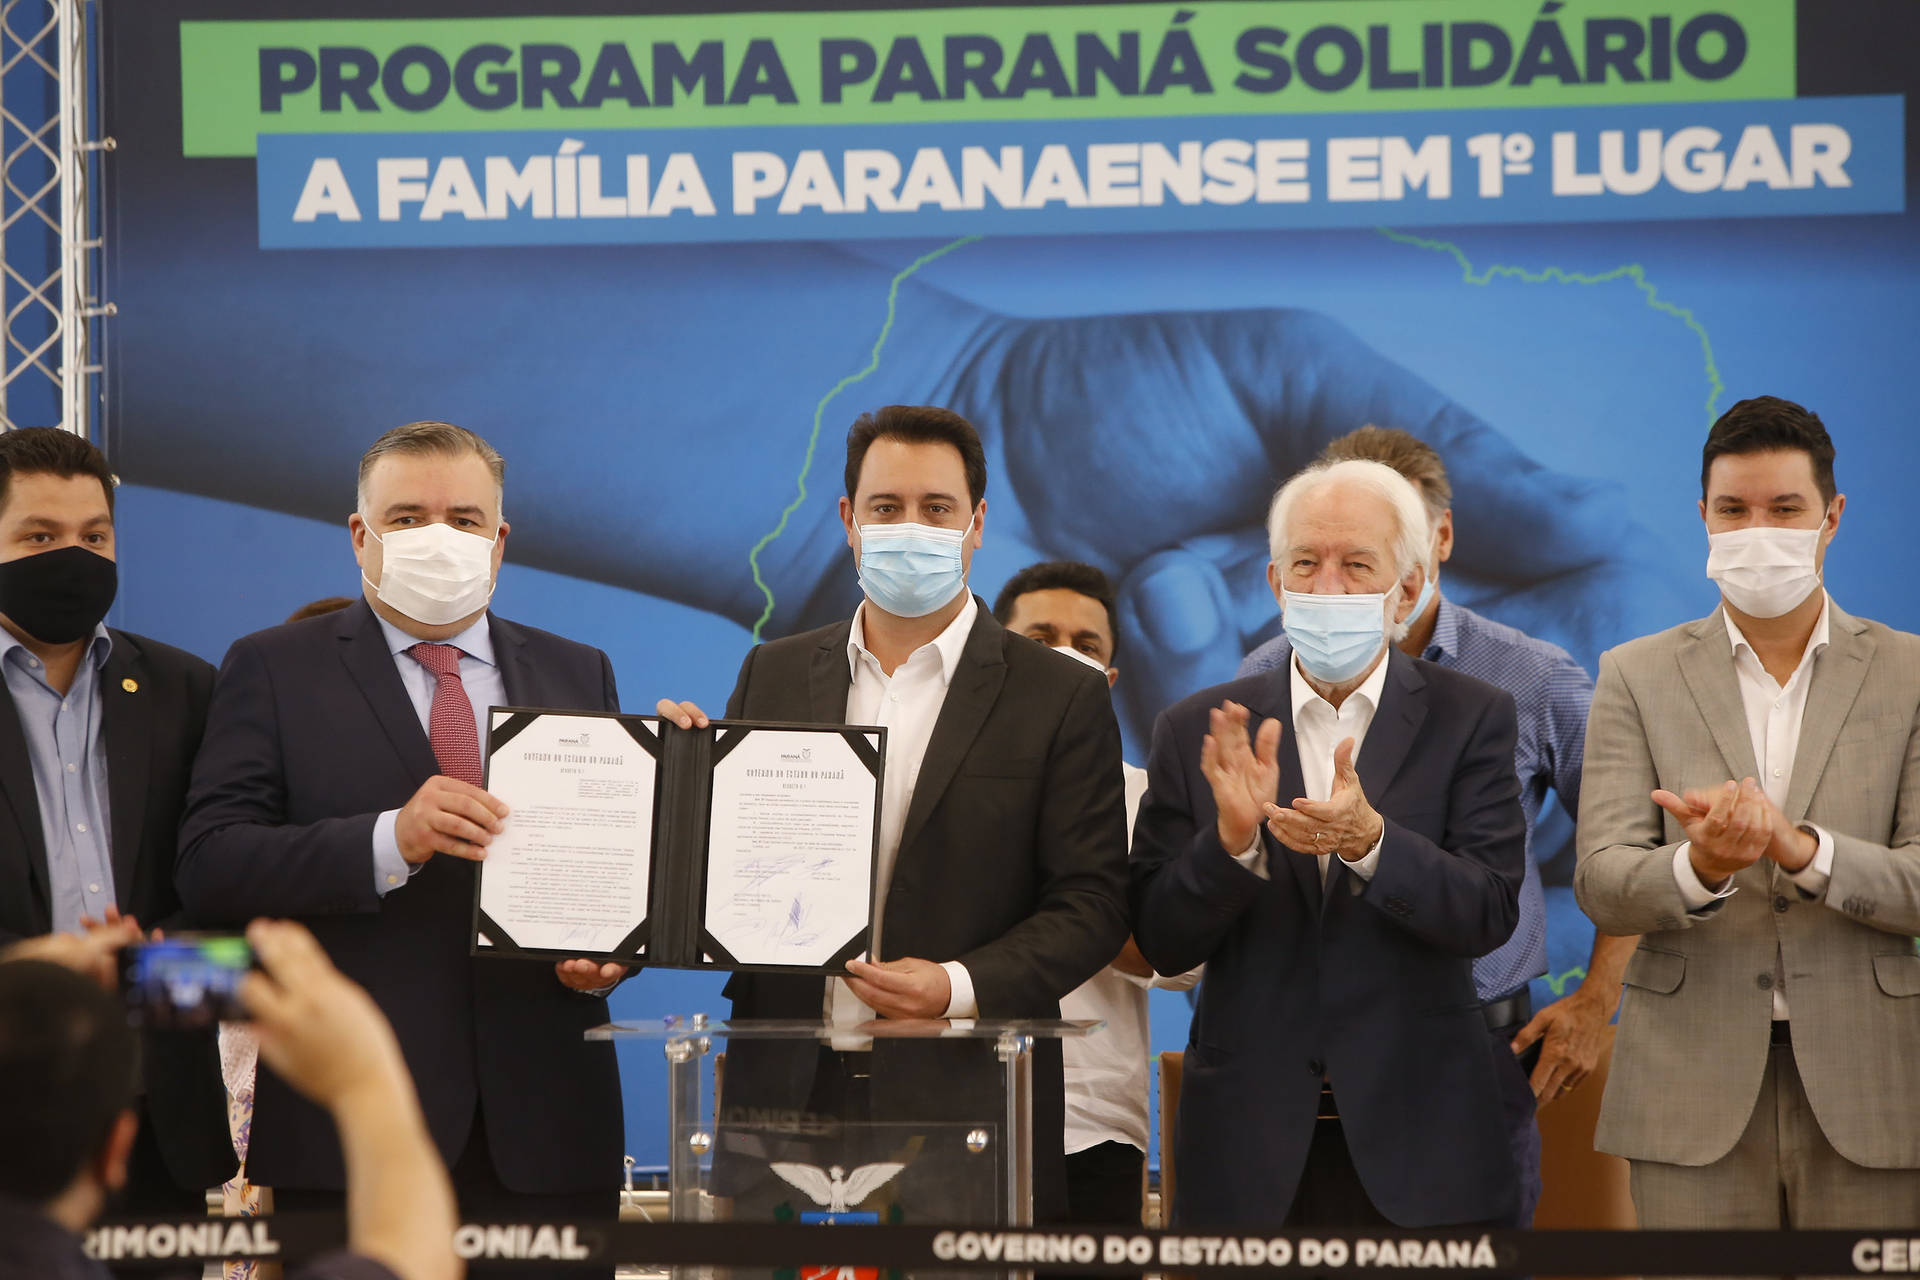 Paraná Solidário: Entenda como funciona o programa de benefícios sociais do Estado do Paraná